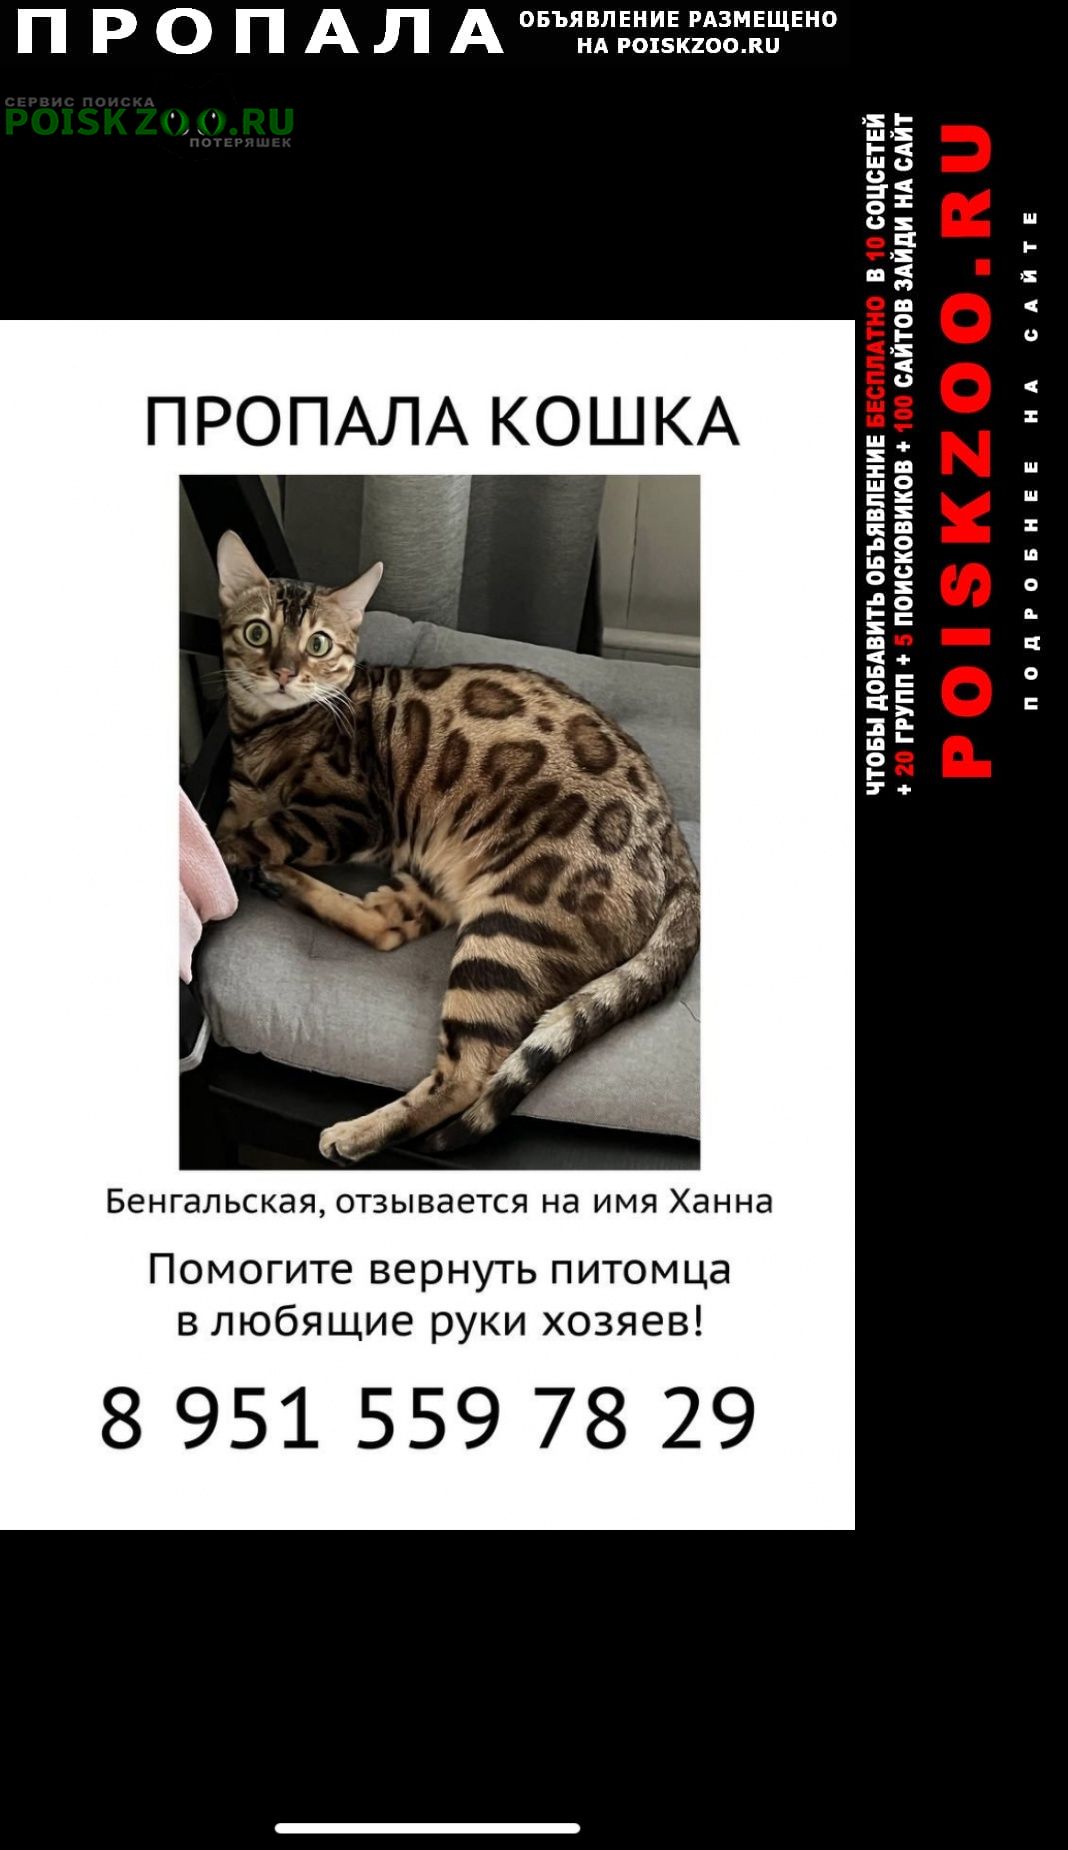 Москва Пропала кошка бенгальская кошка